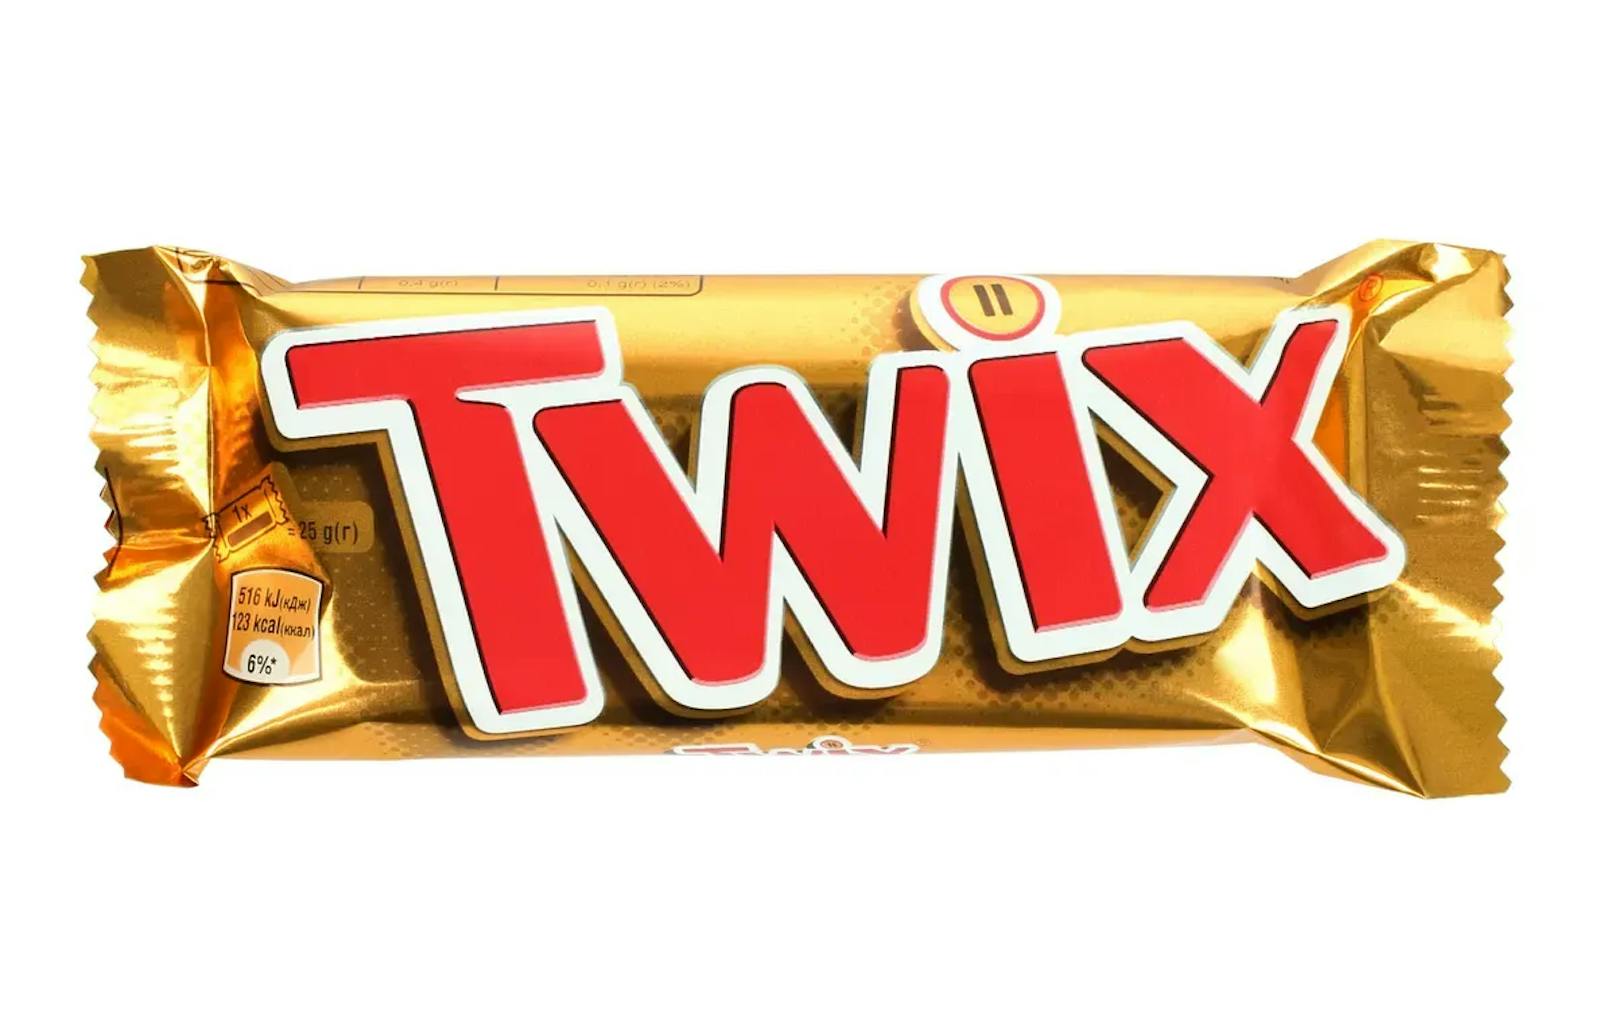 Auf Twitter schrieb Twix bereits 2018, dass der Name eine Abkürzung für "Twin Sticks" ist.